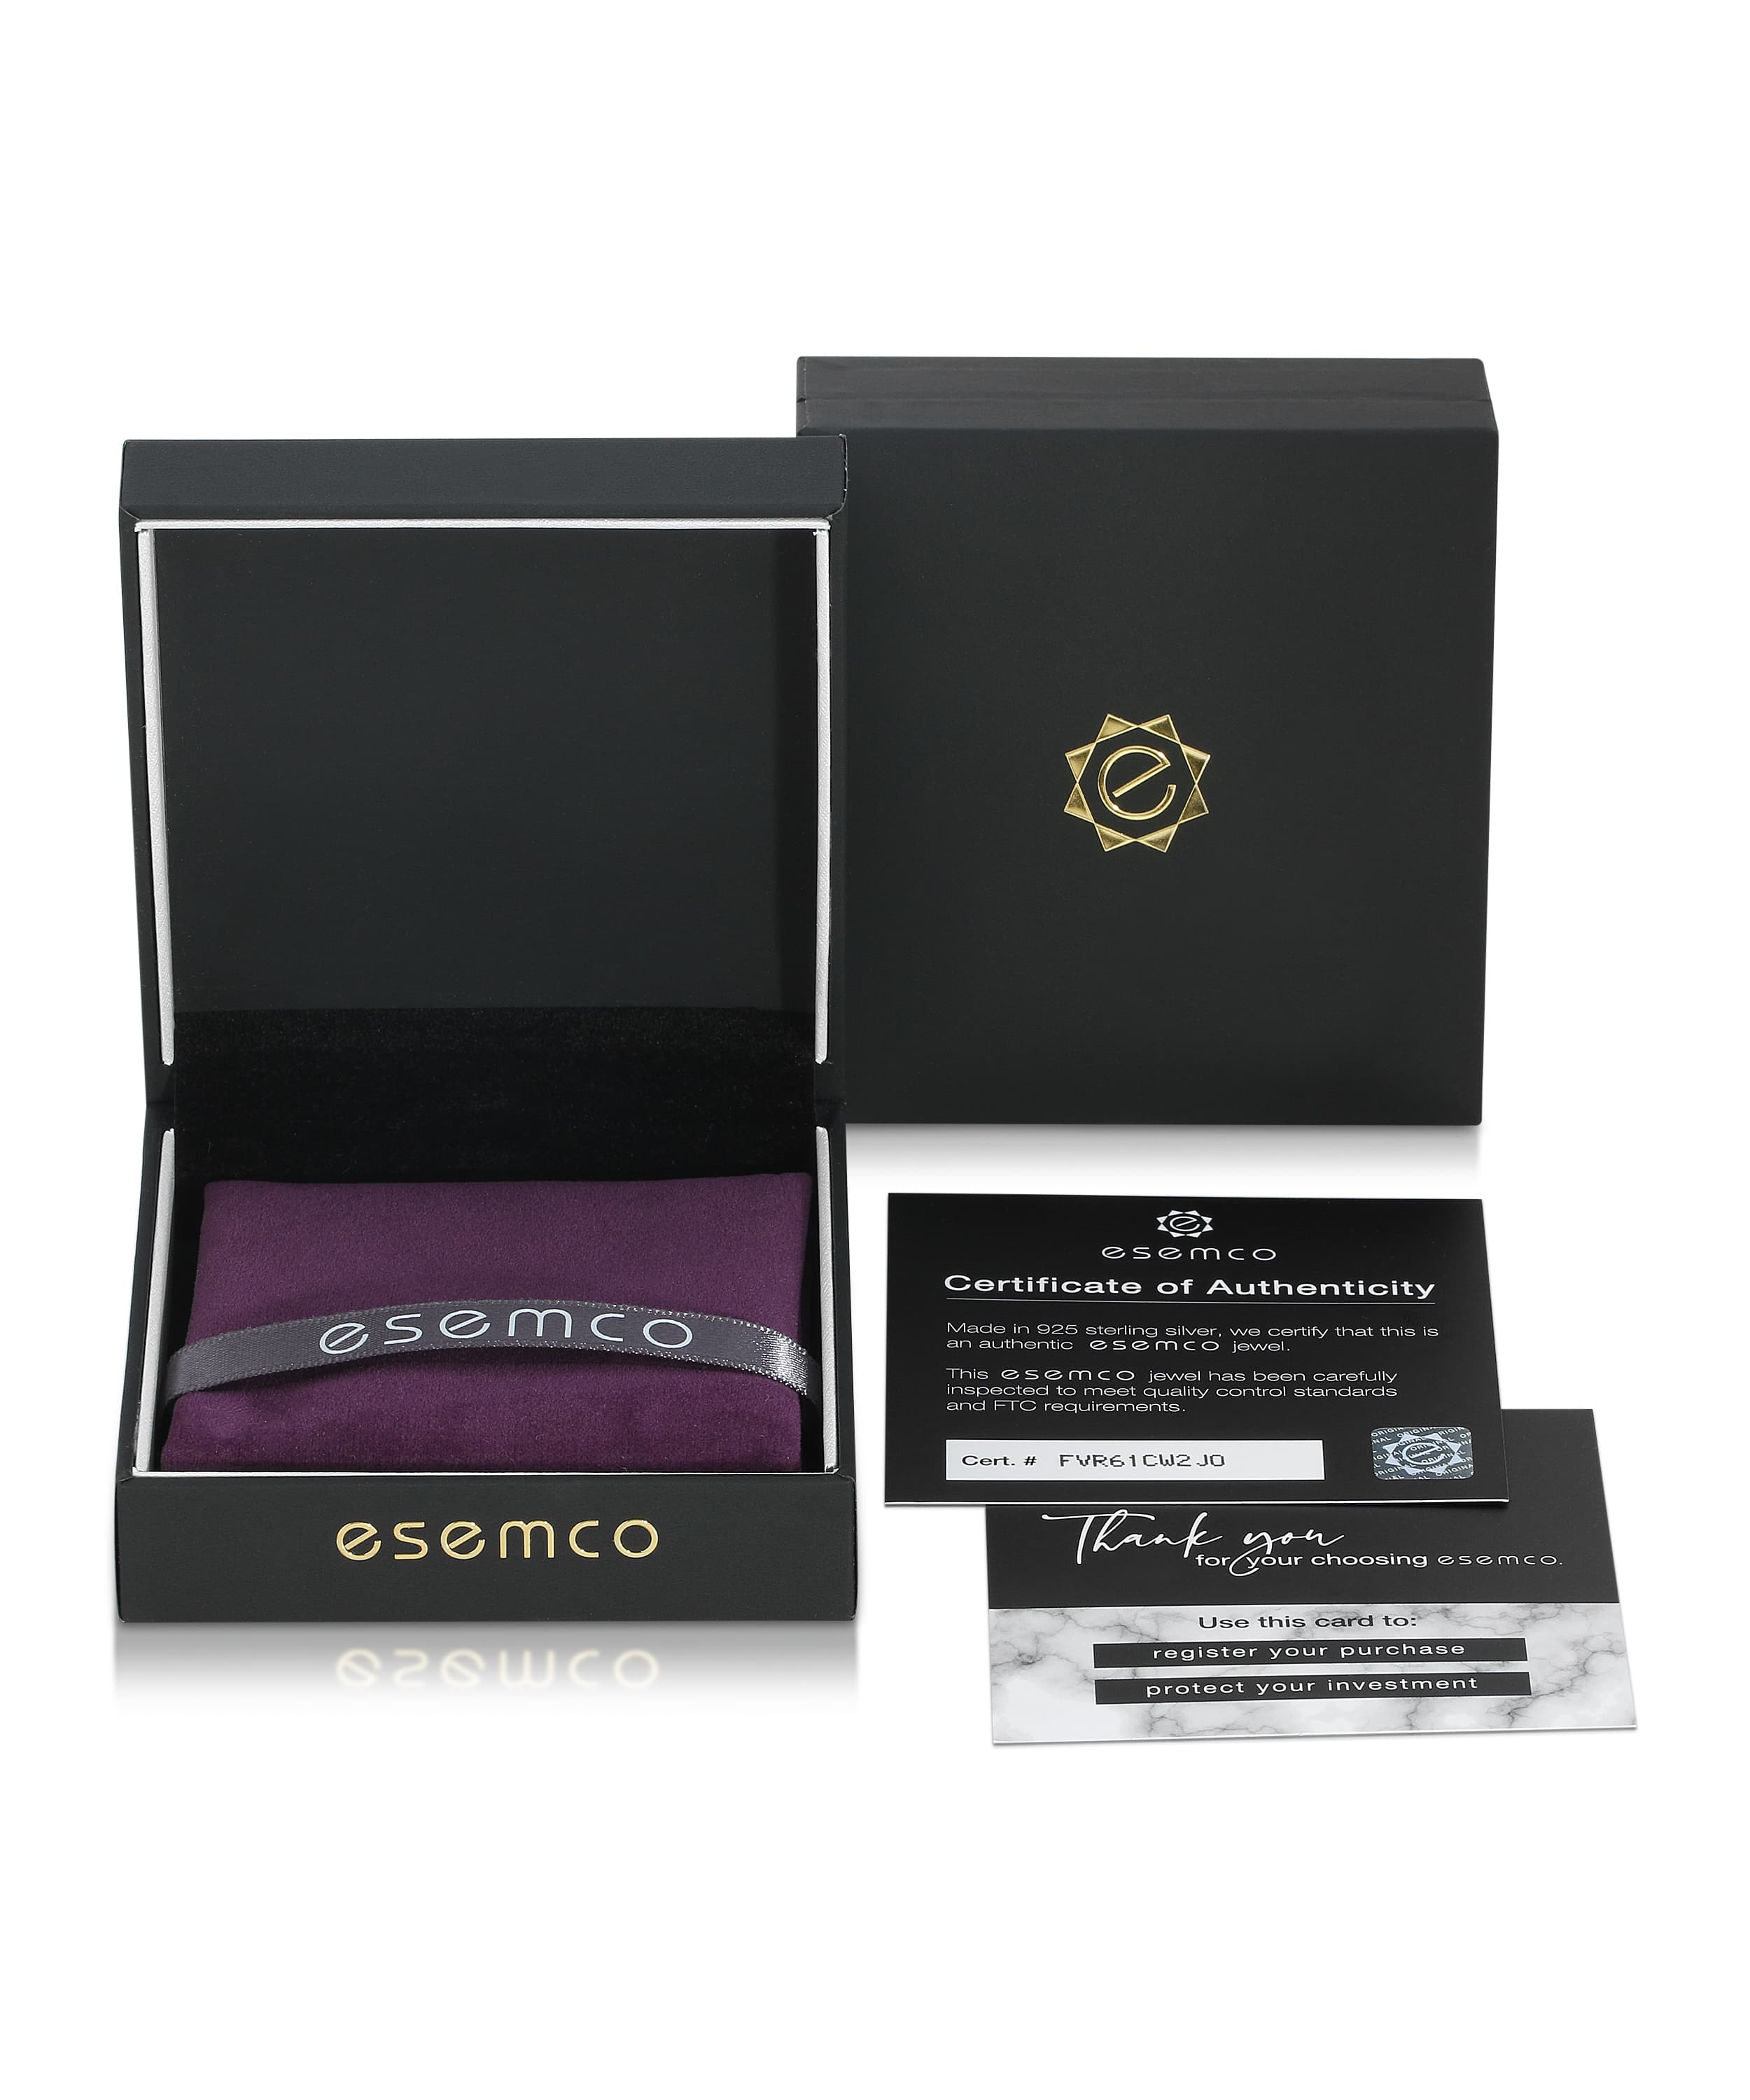 ESEMCO Diamond 18k White Gold Letter C Initial Open Ring View 4